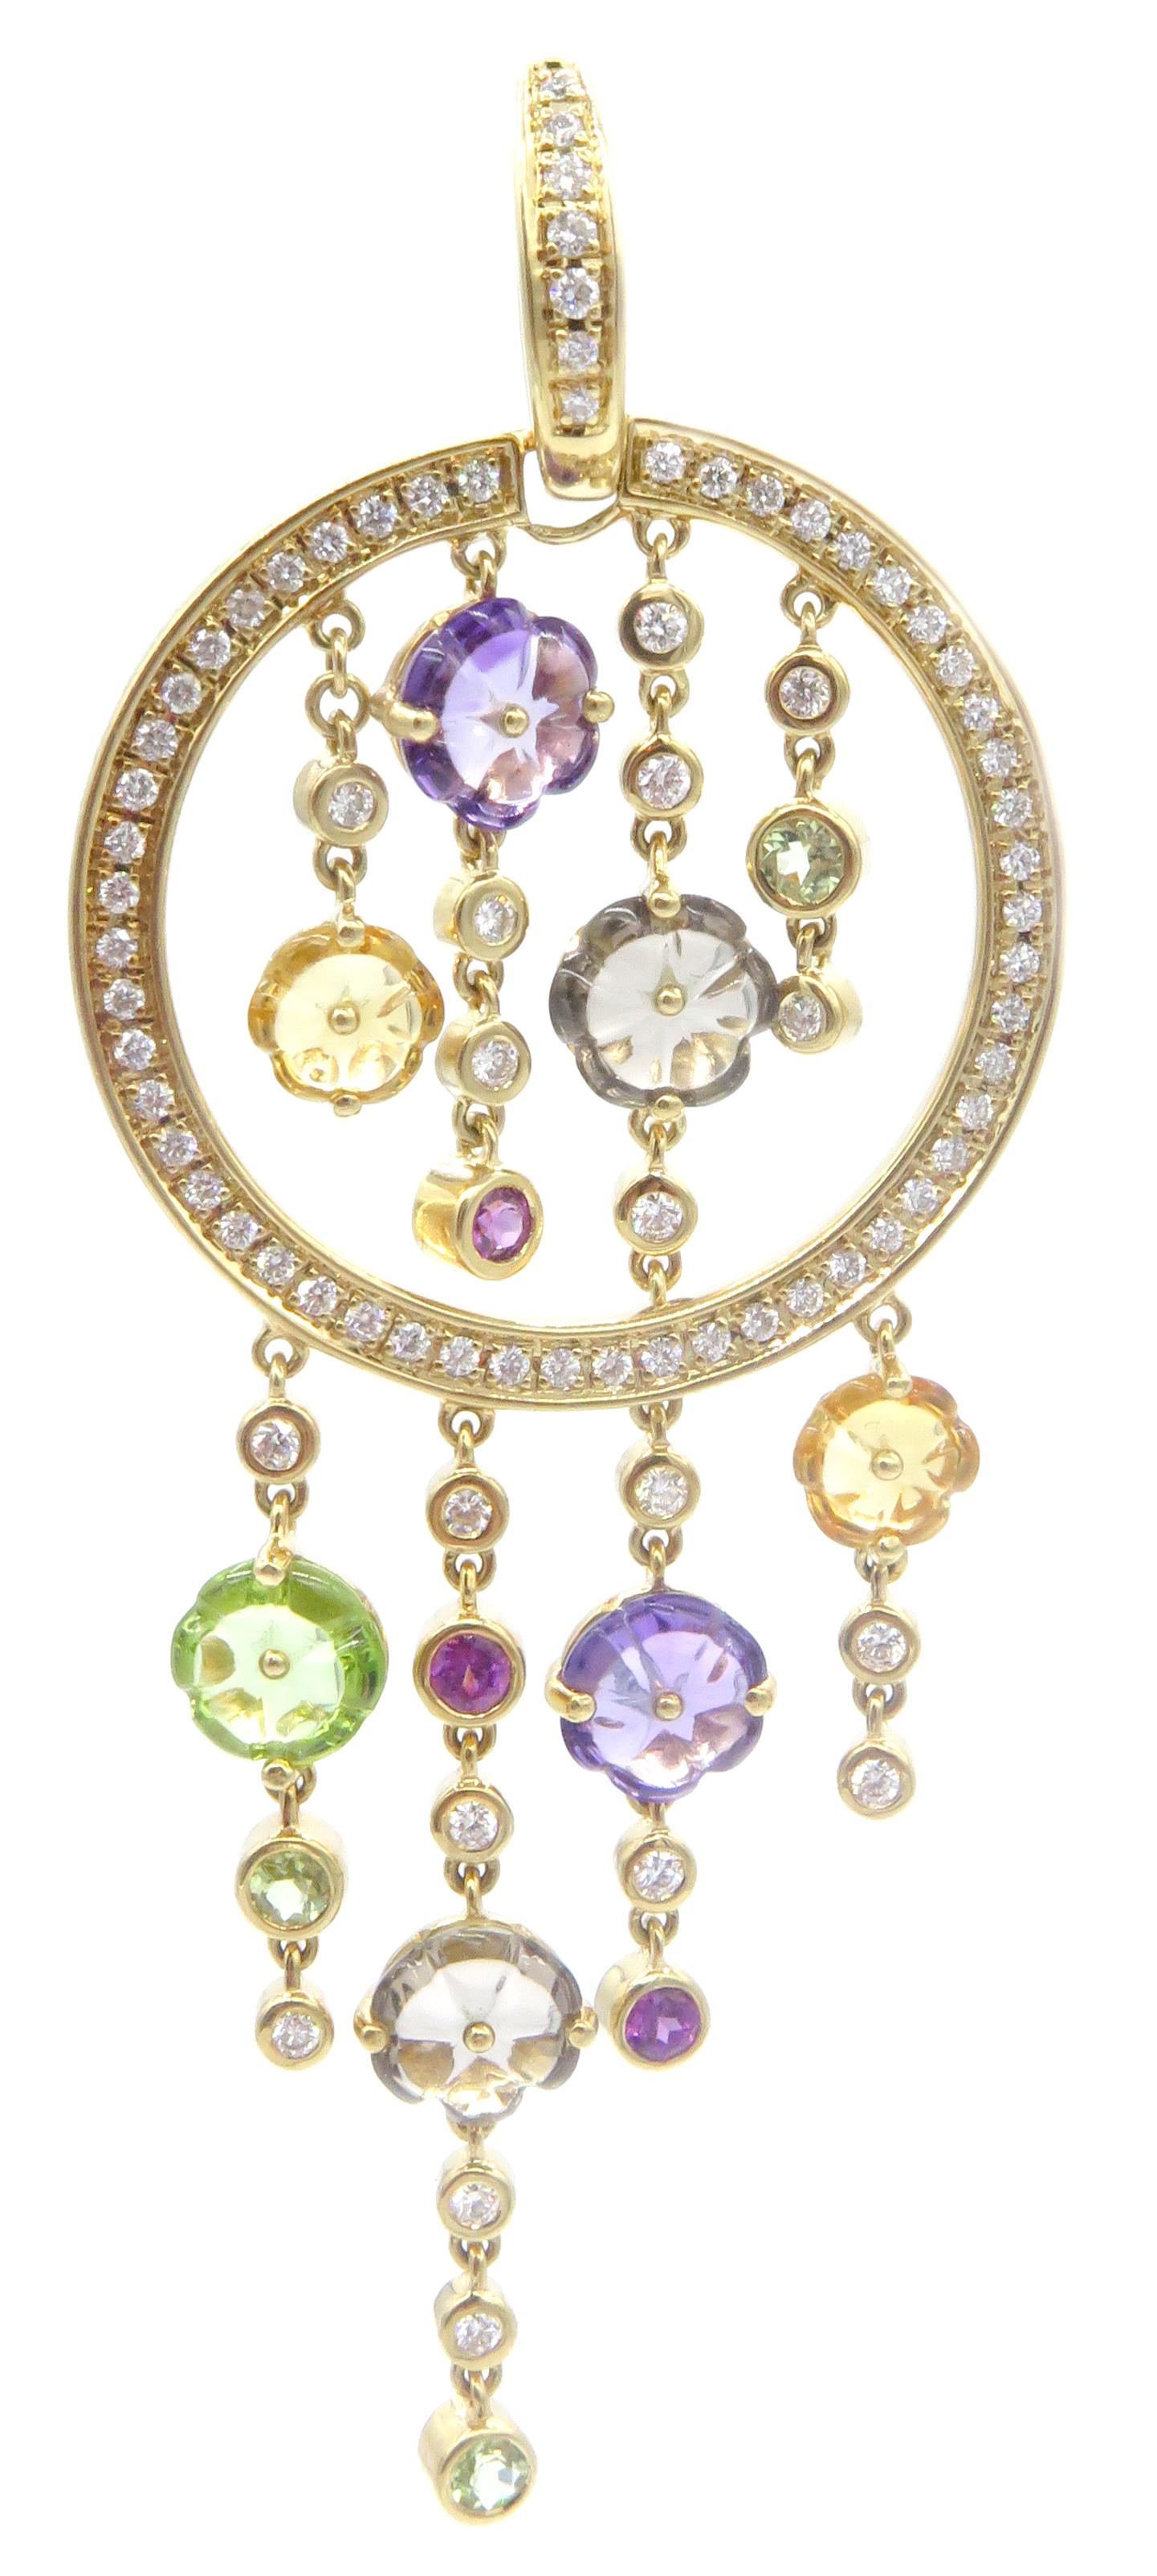 Ein wunderschönes Paar Di Modolo Diamantohrringe aus der Tempia Kollektion, hergestellt in Italien. Diese tropfenförmigen Ohrringe aus 18 Karat Gelbgold zeichnen sich durch eine Kombination aus Edelsteinen und Halbedelsteinen aus, die sich zu diesen